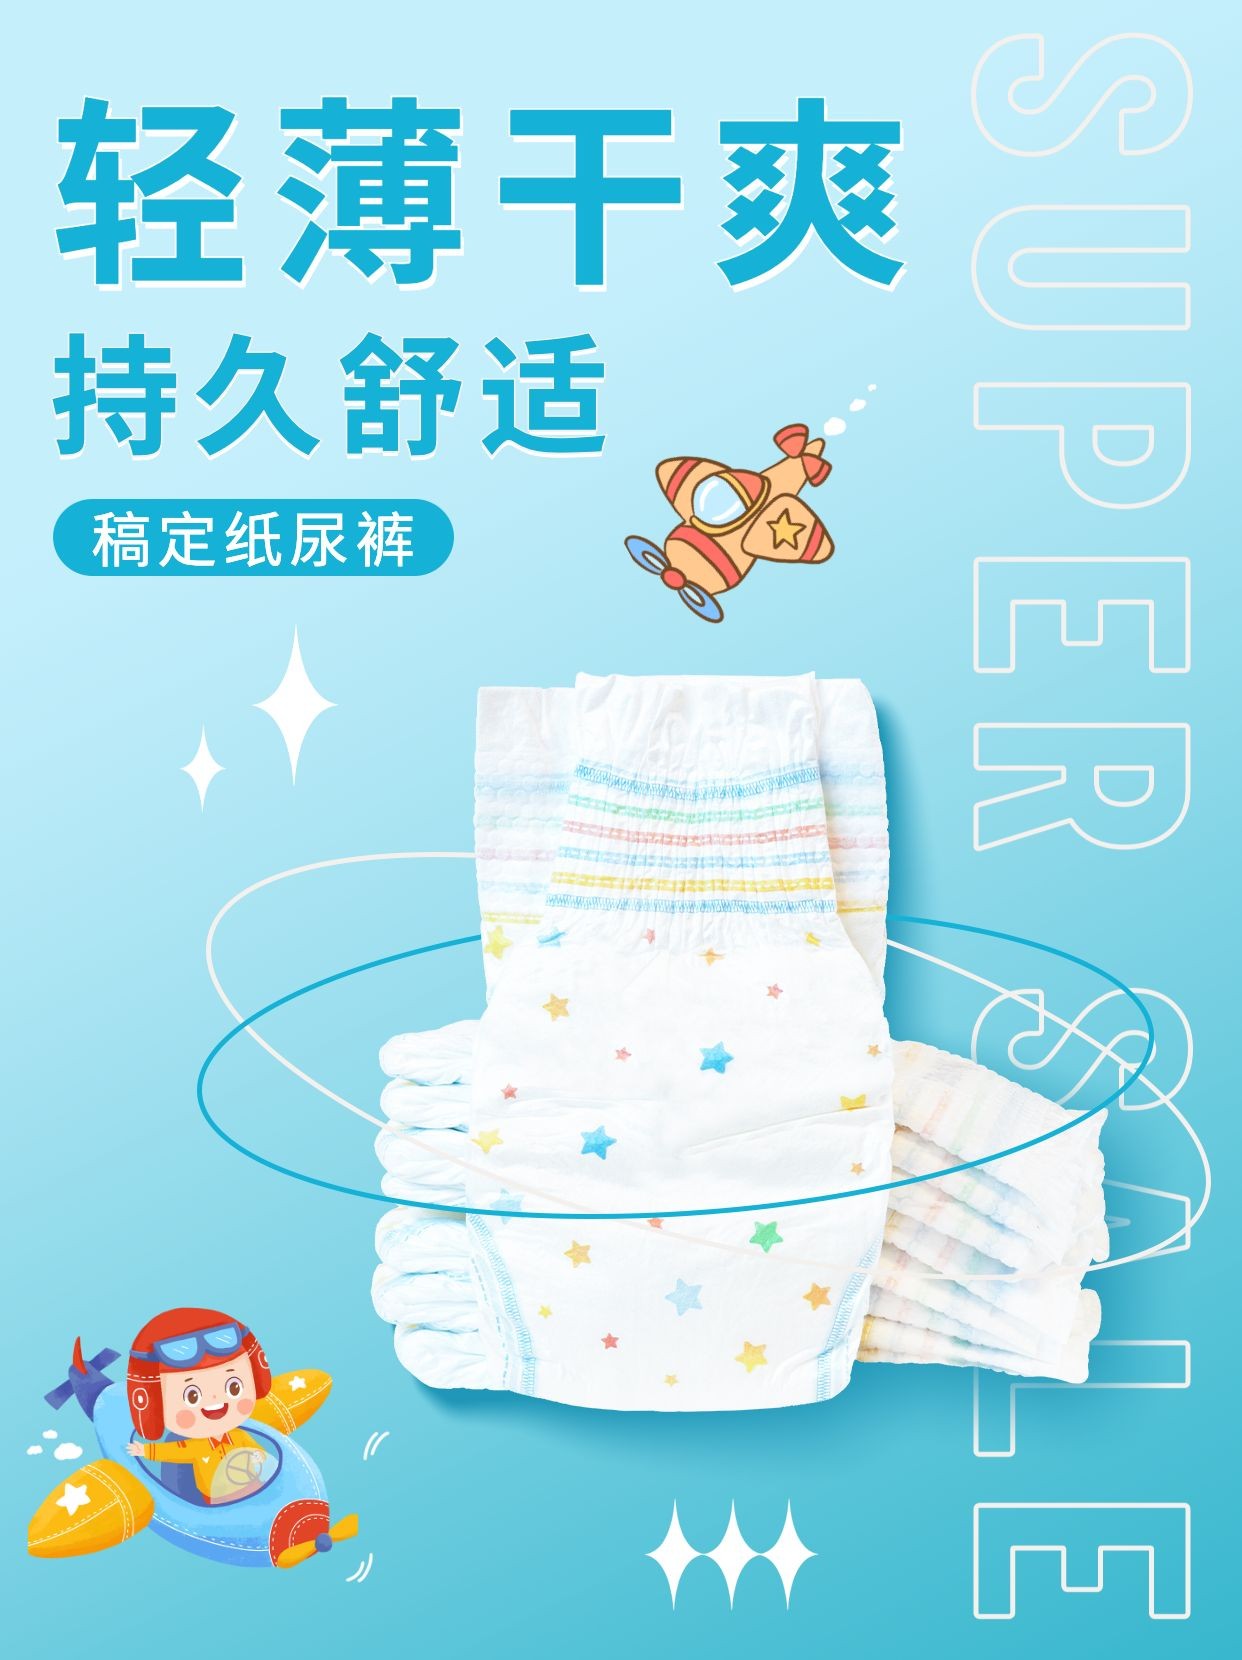 母婴亲子婴幼儿产品介绍营销小红书配图预览效果